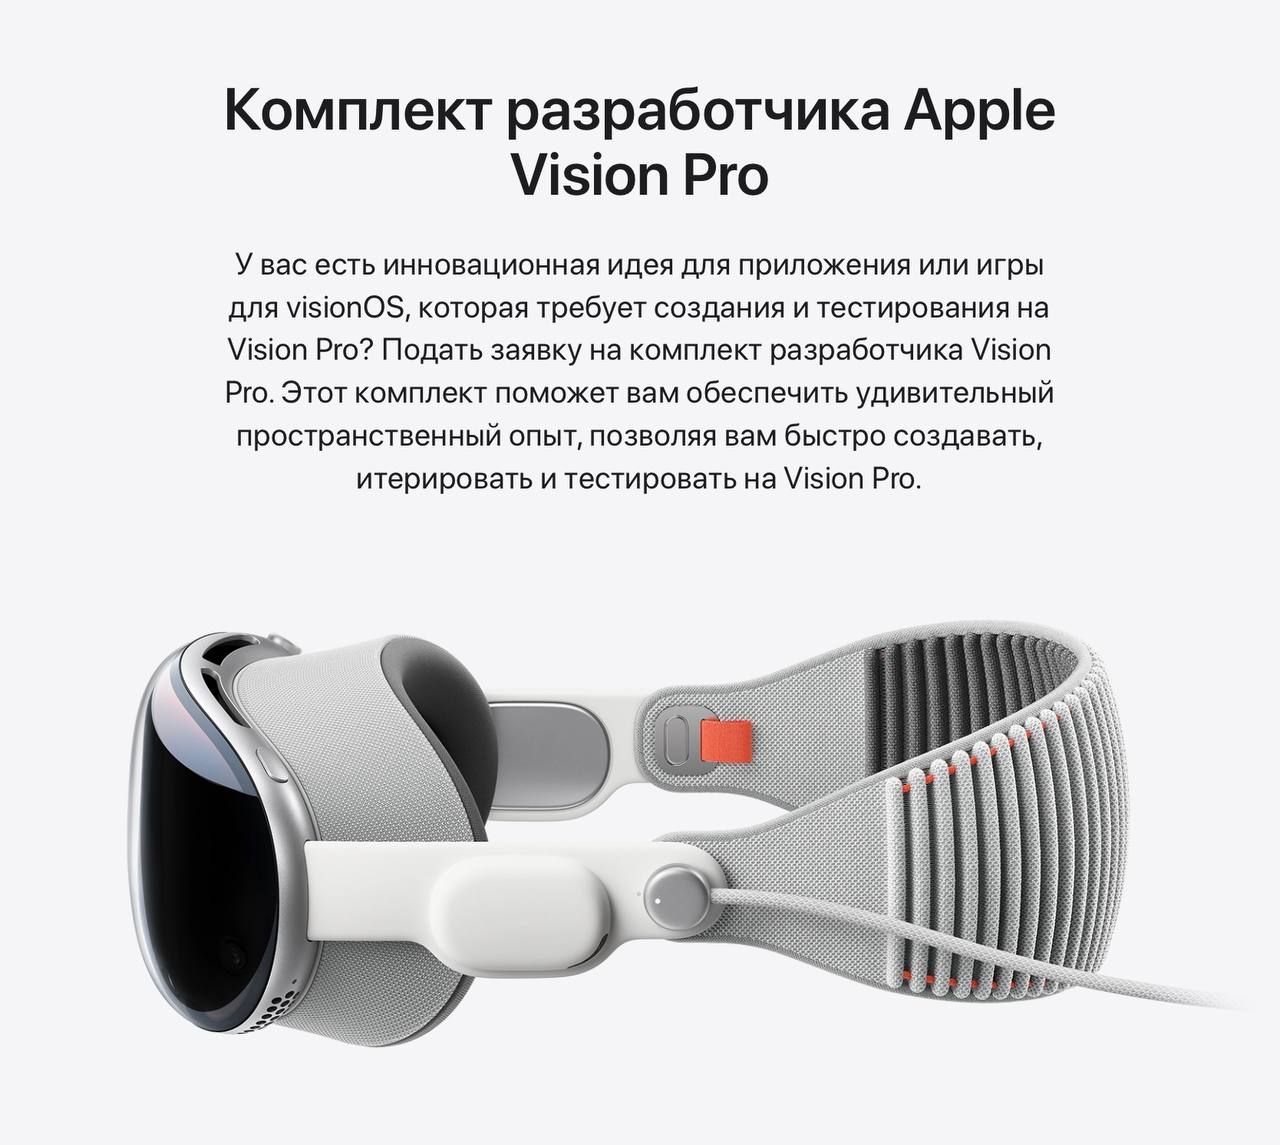 Но отмечается, что поскольку это устройство для разработки, принадлежащее Apple, оно должно быть возвращено по запросу компании.